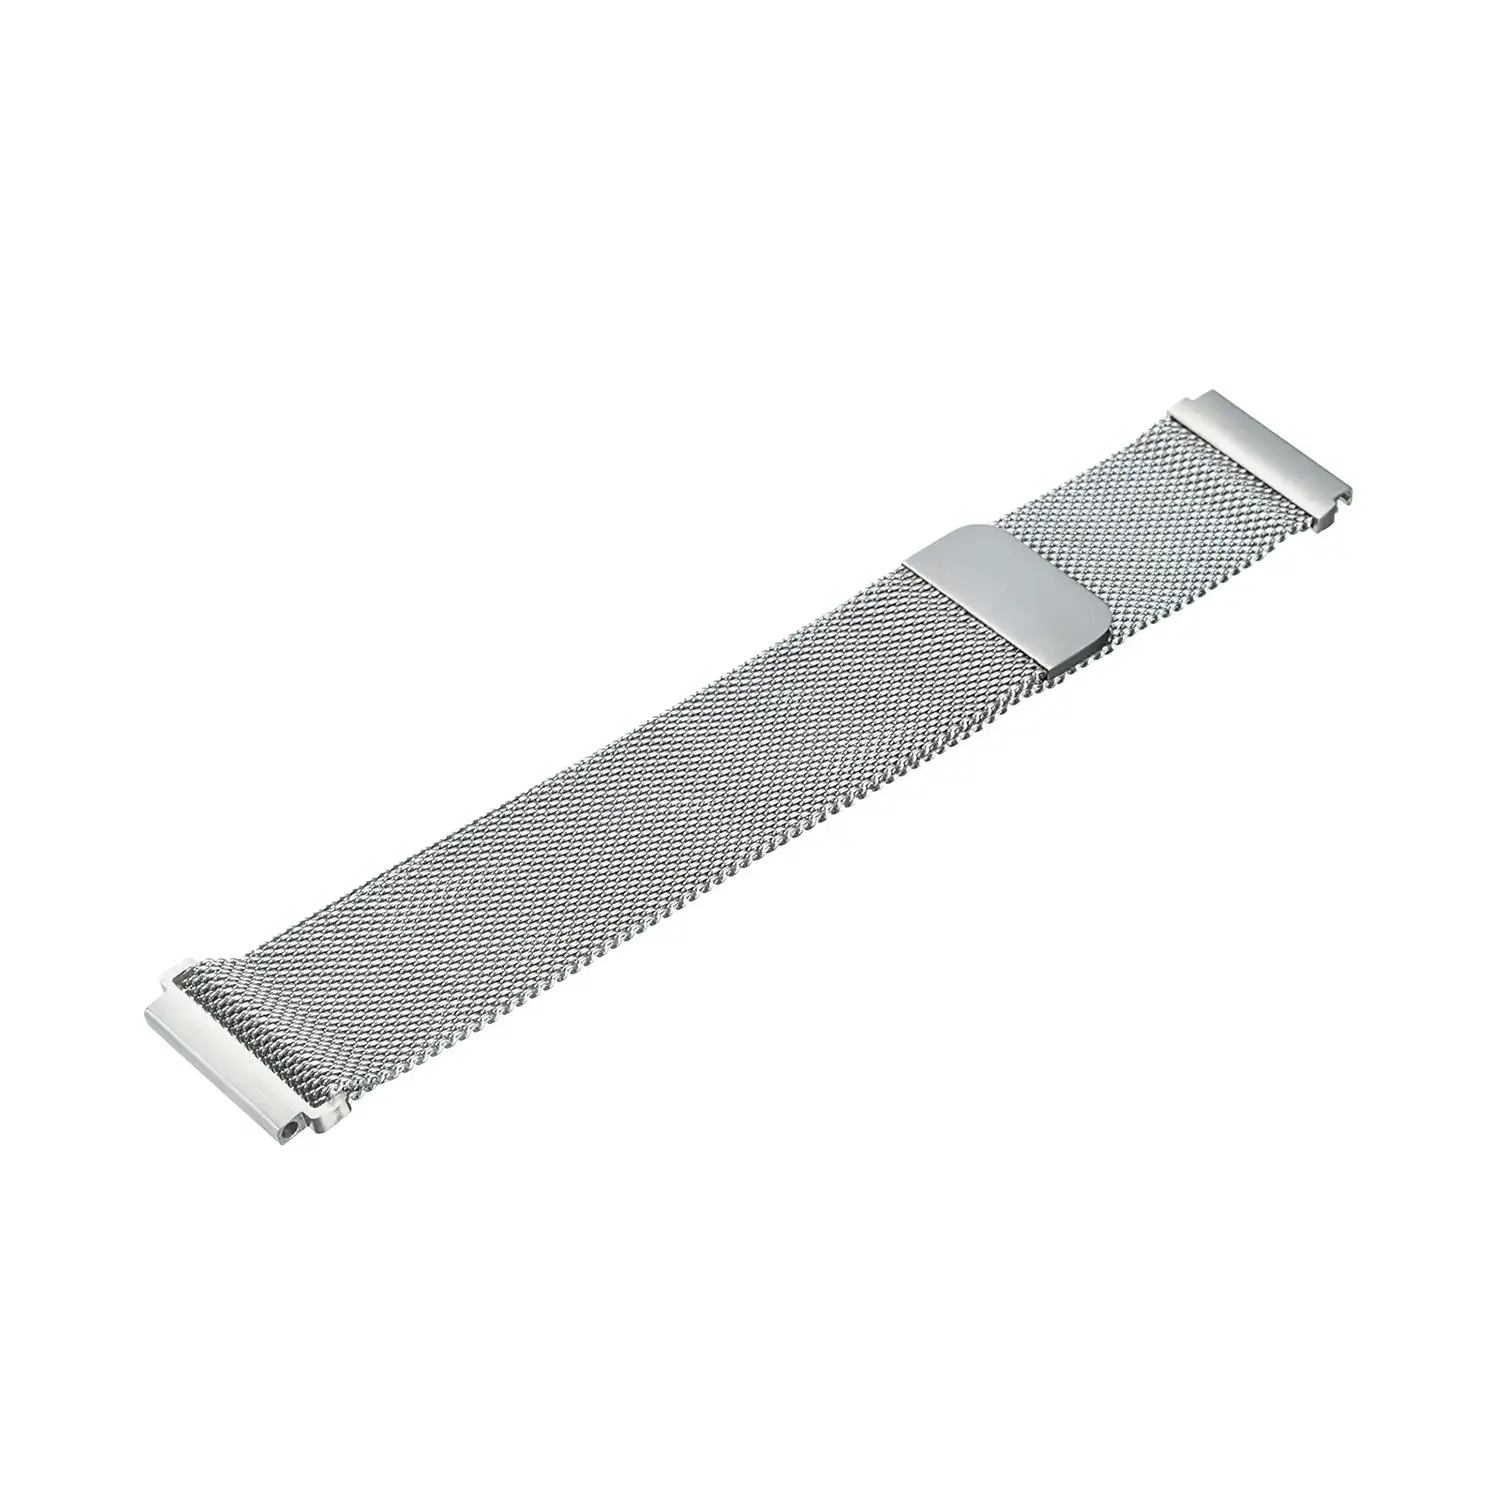 Correa universal metálica de acero inoxidable con cierre magnético para relojes de 18mm. Sistema Quick Release de fácil cambio.